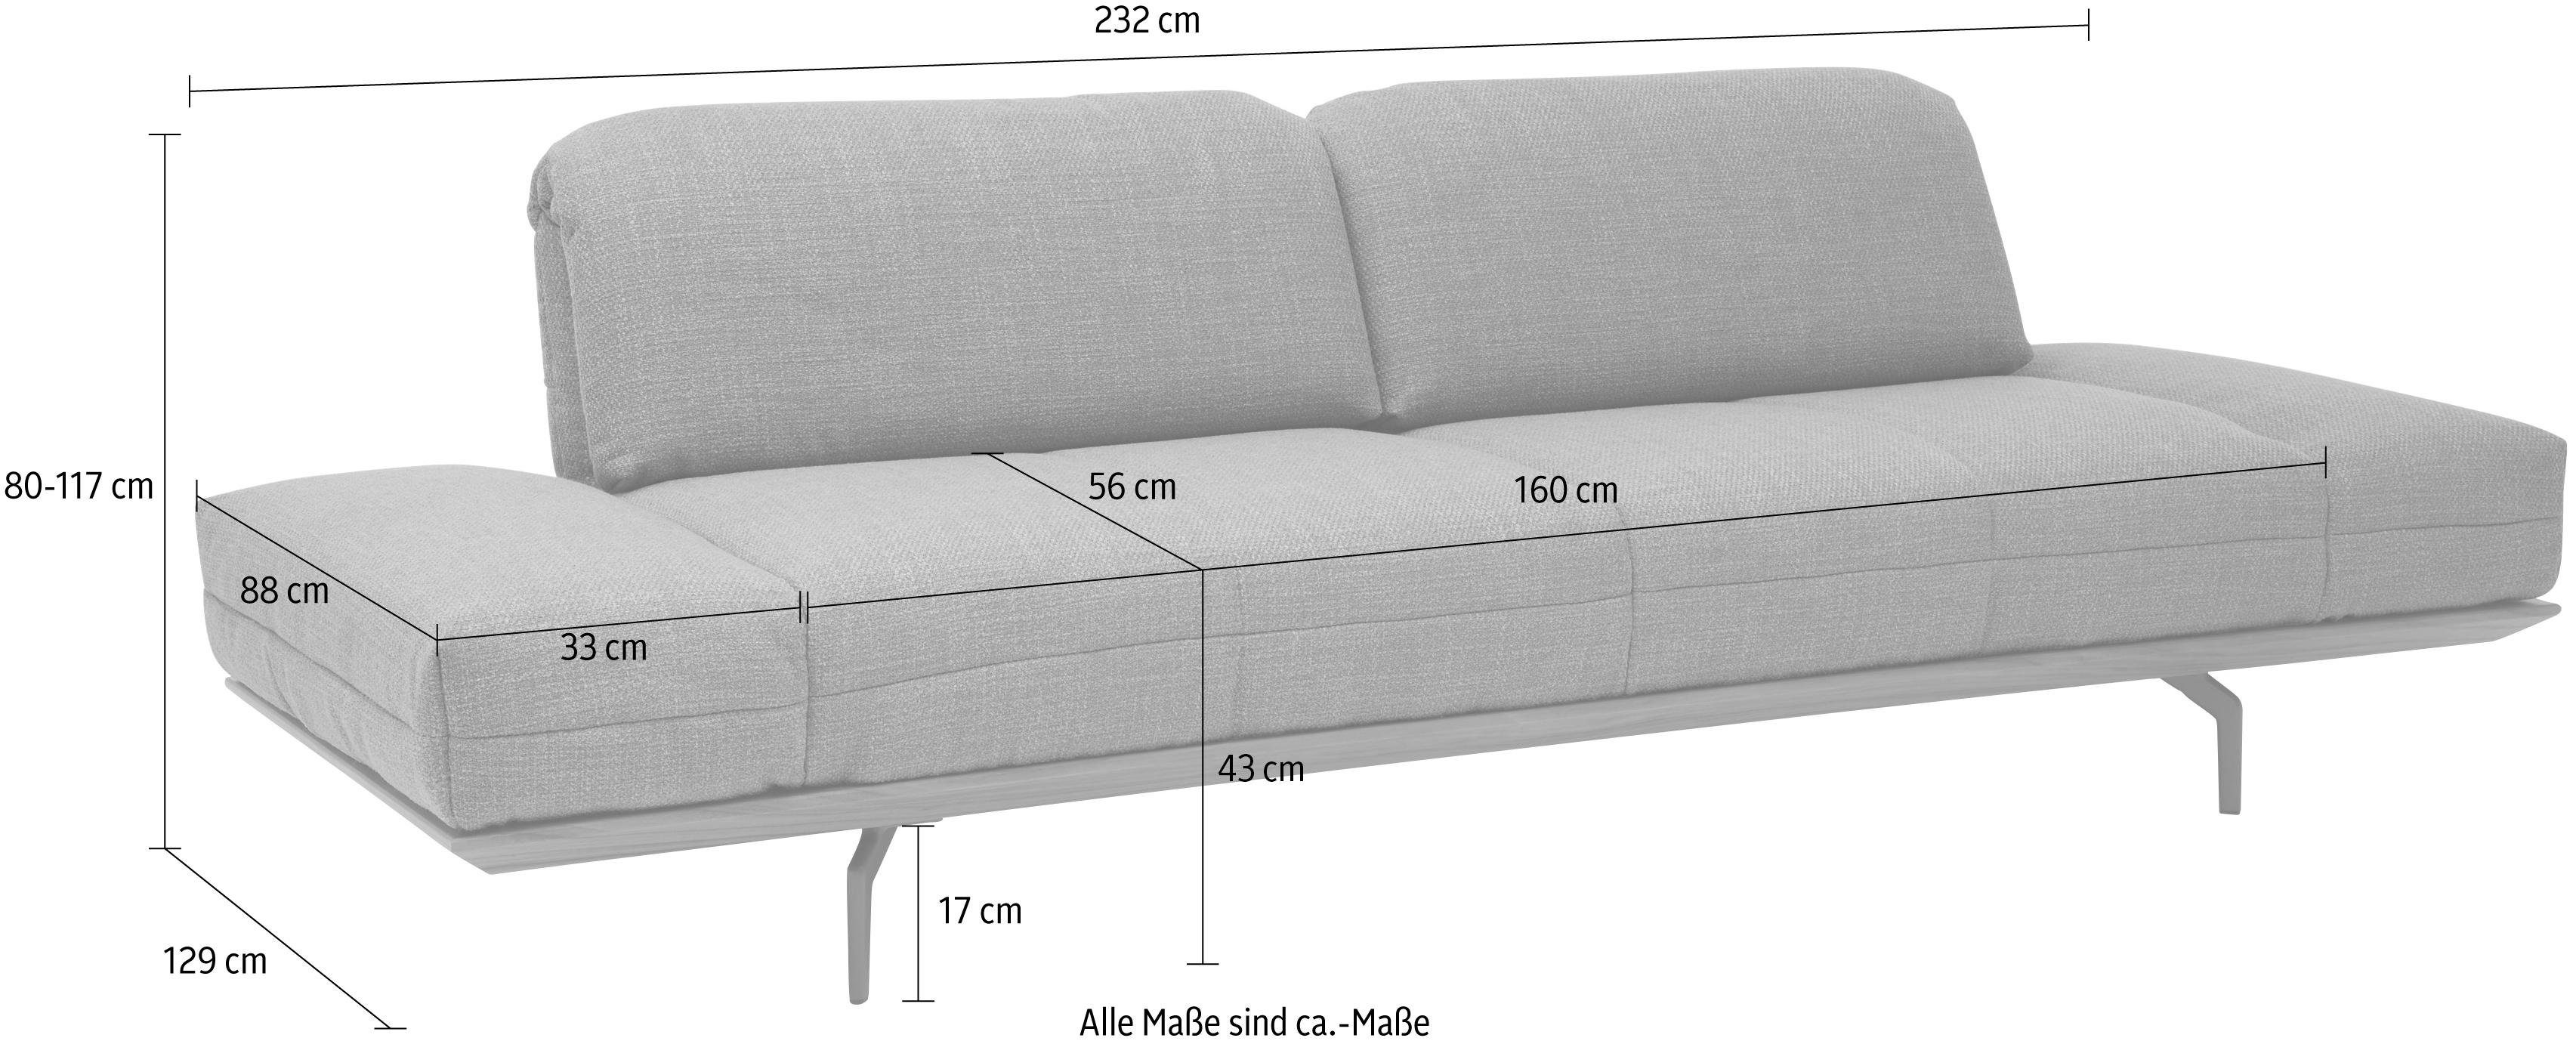 hülsta sofa Eiche Nußbaum, in Holzrahmen 2 3-Sitzer hs.420, 232 Breite in cm Natur oder Qualitäten